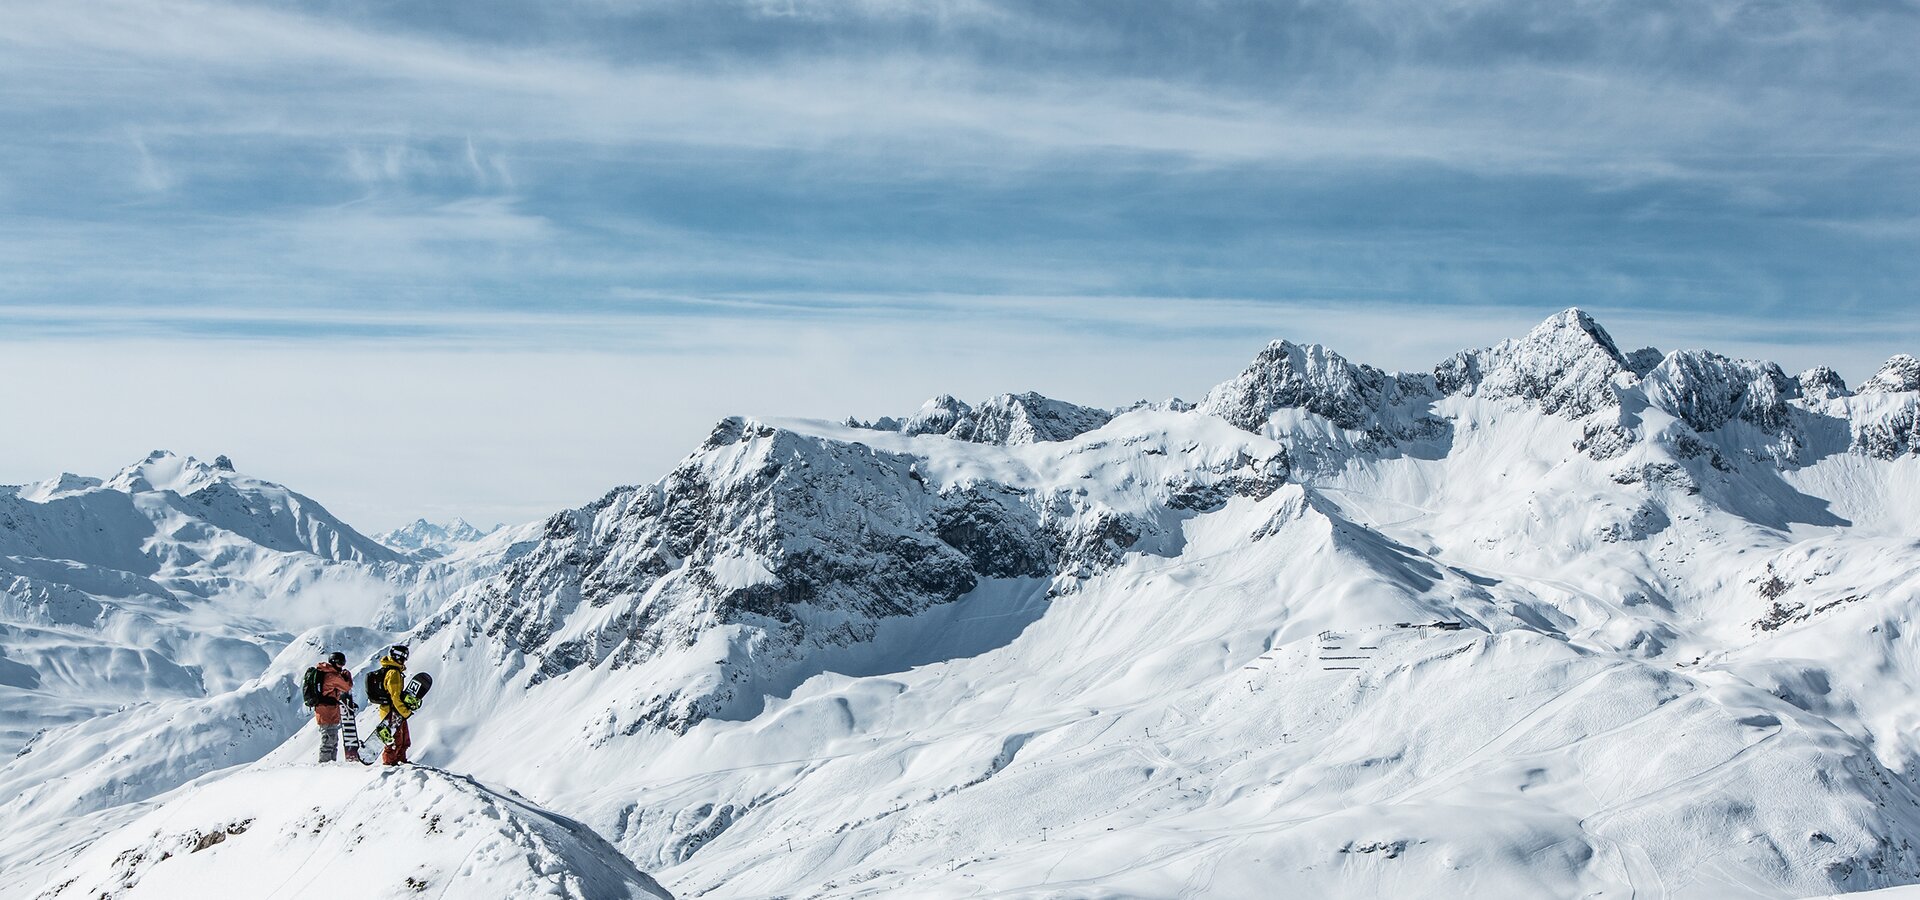 snowboarding in Lech am Arlberg | © Christoph Schoech / Lech Zuers Tourismus